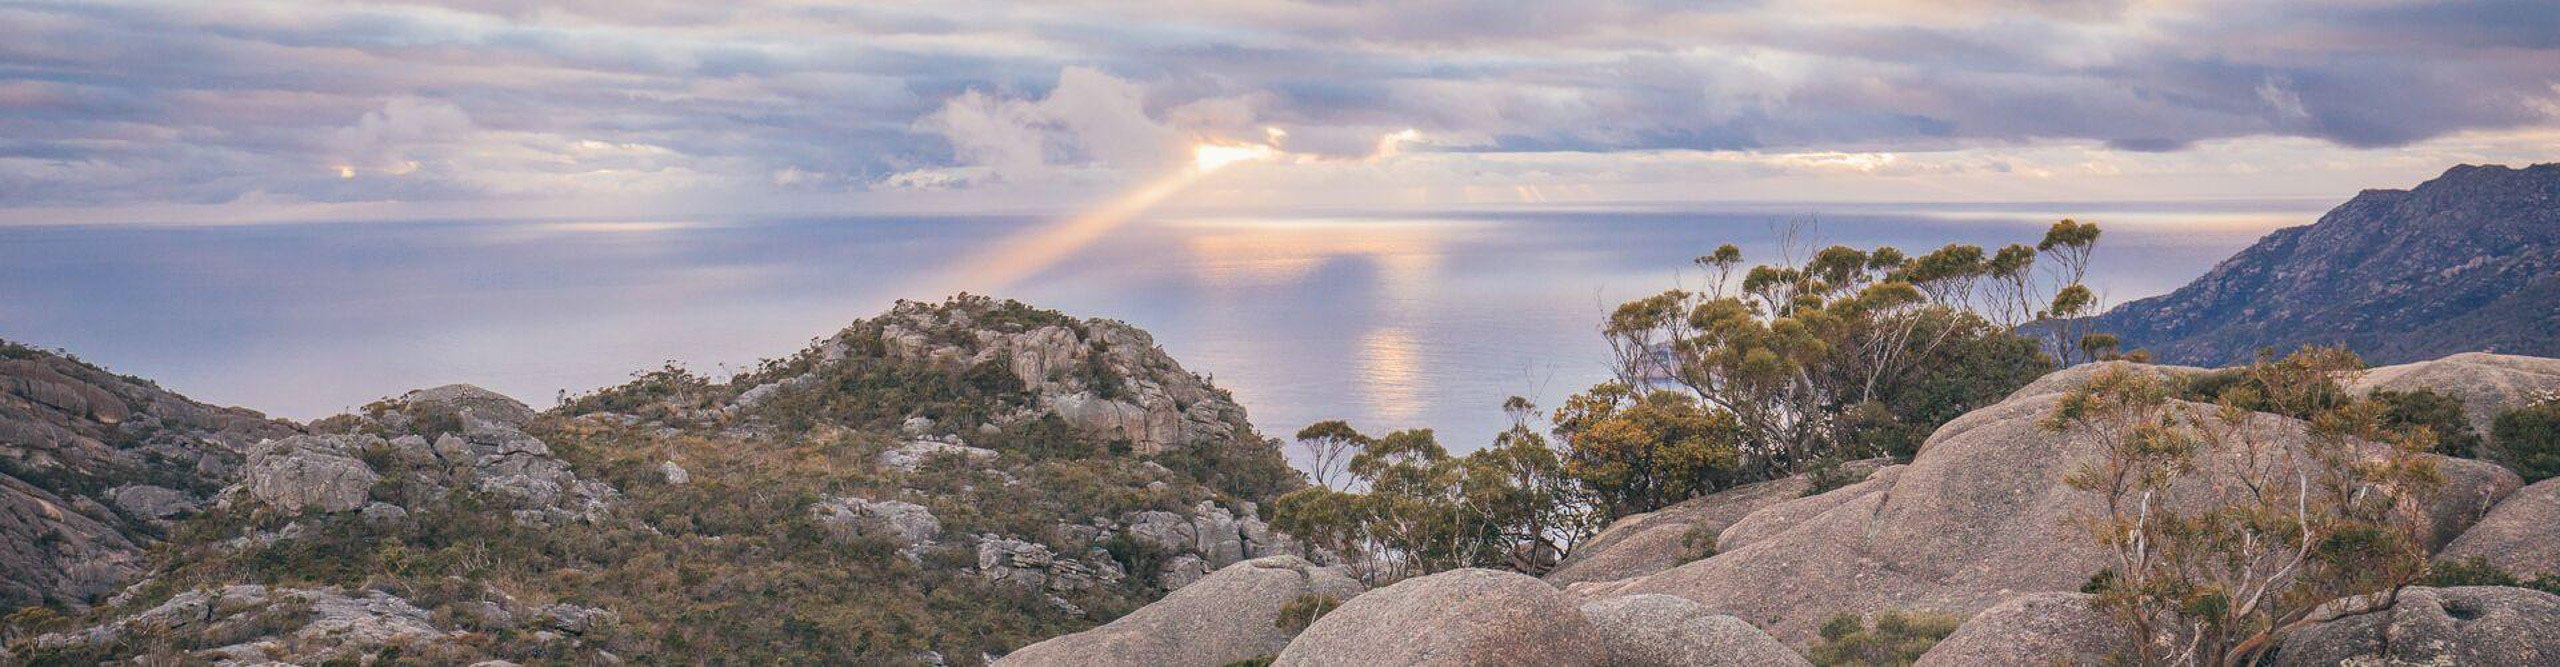 Sunset over Freycinet Mountain, Tasmania, Australia 